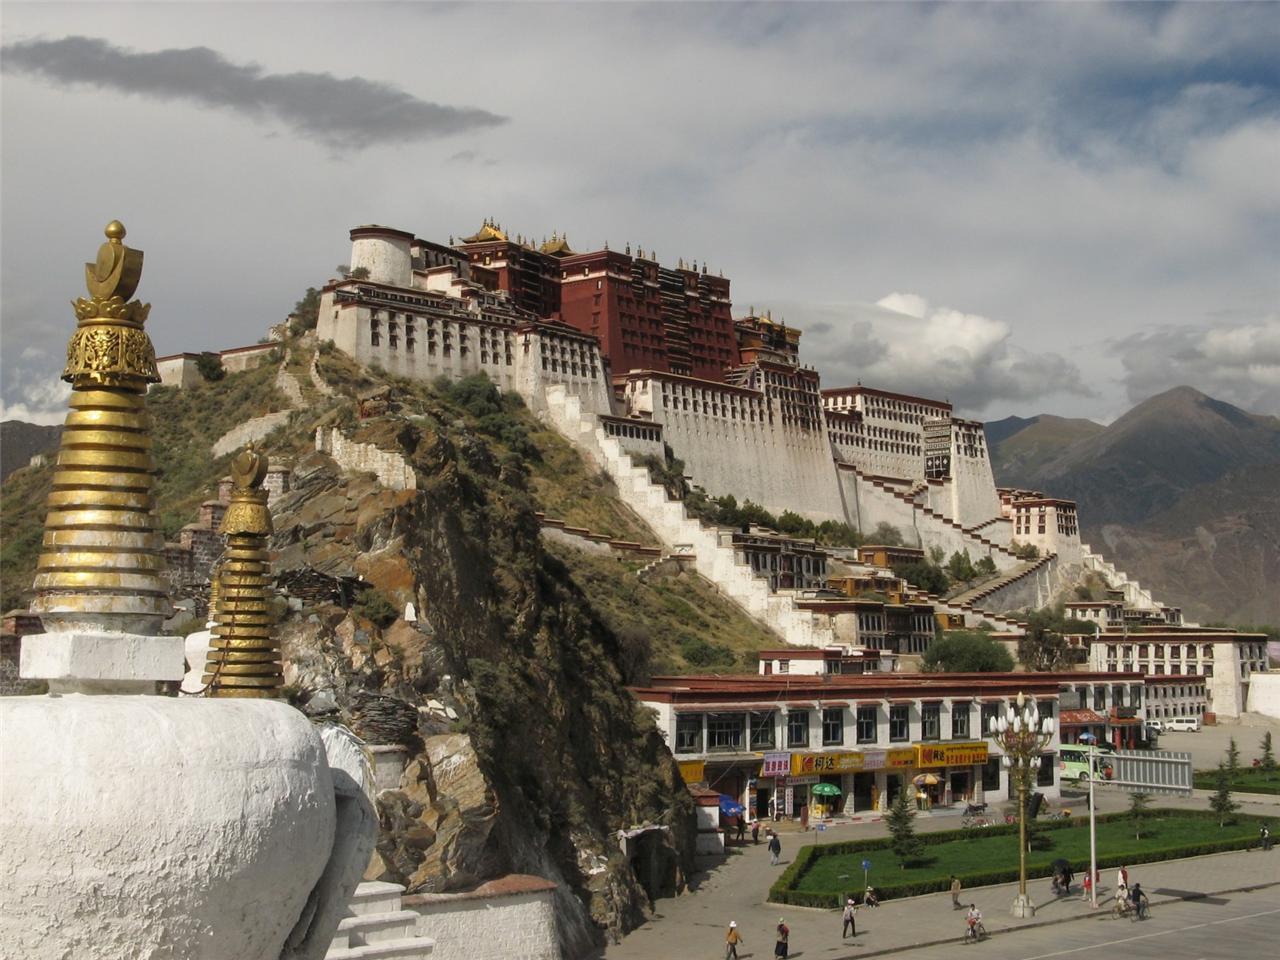 POTALA PALACE GLOSSY POSTER PICTURE PHOTO bodala tibet china lhasa lama 1686